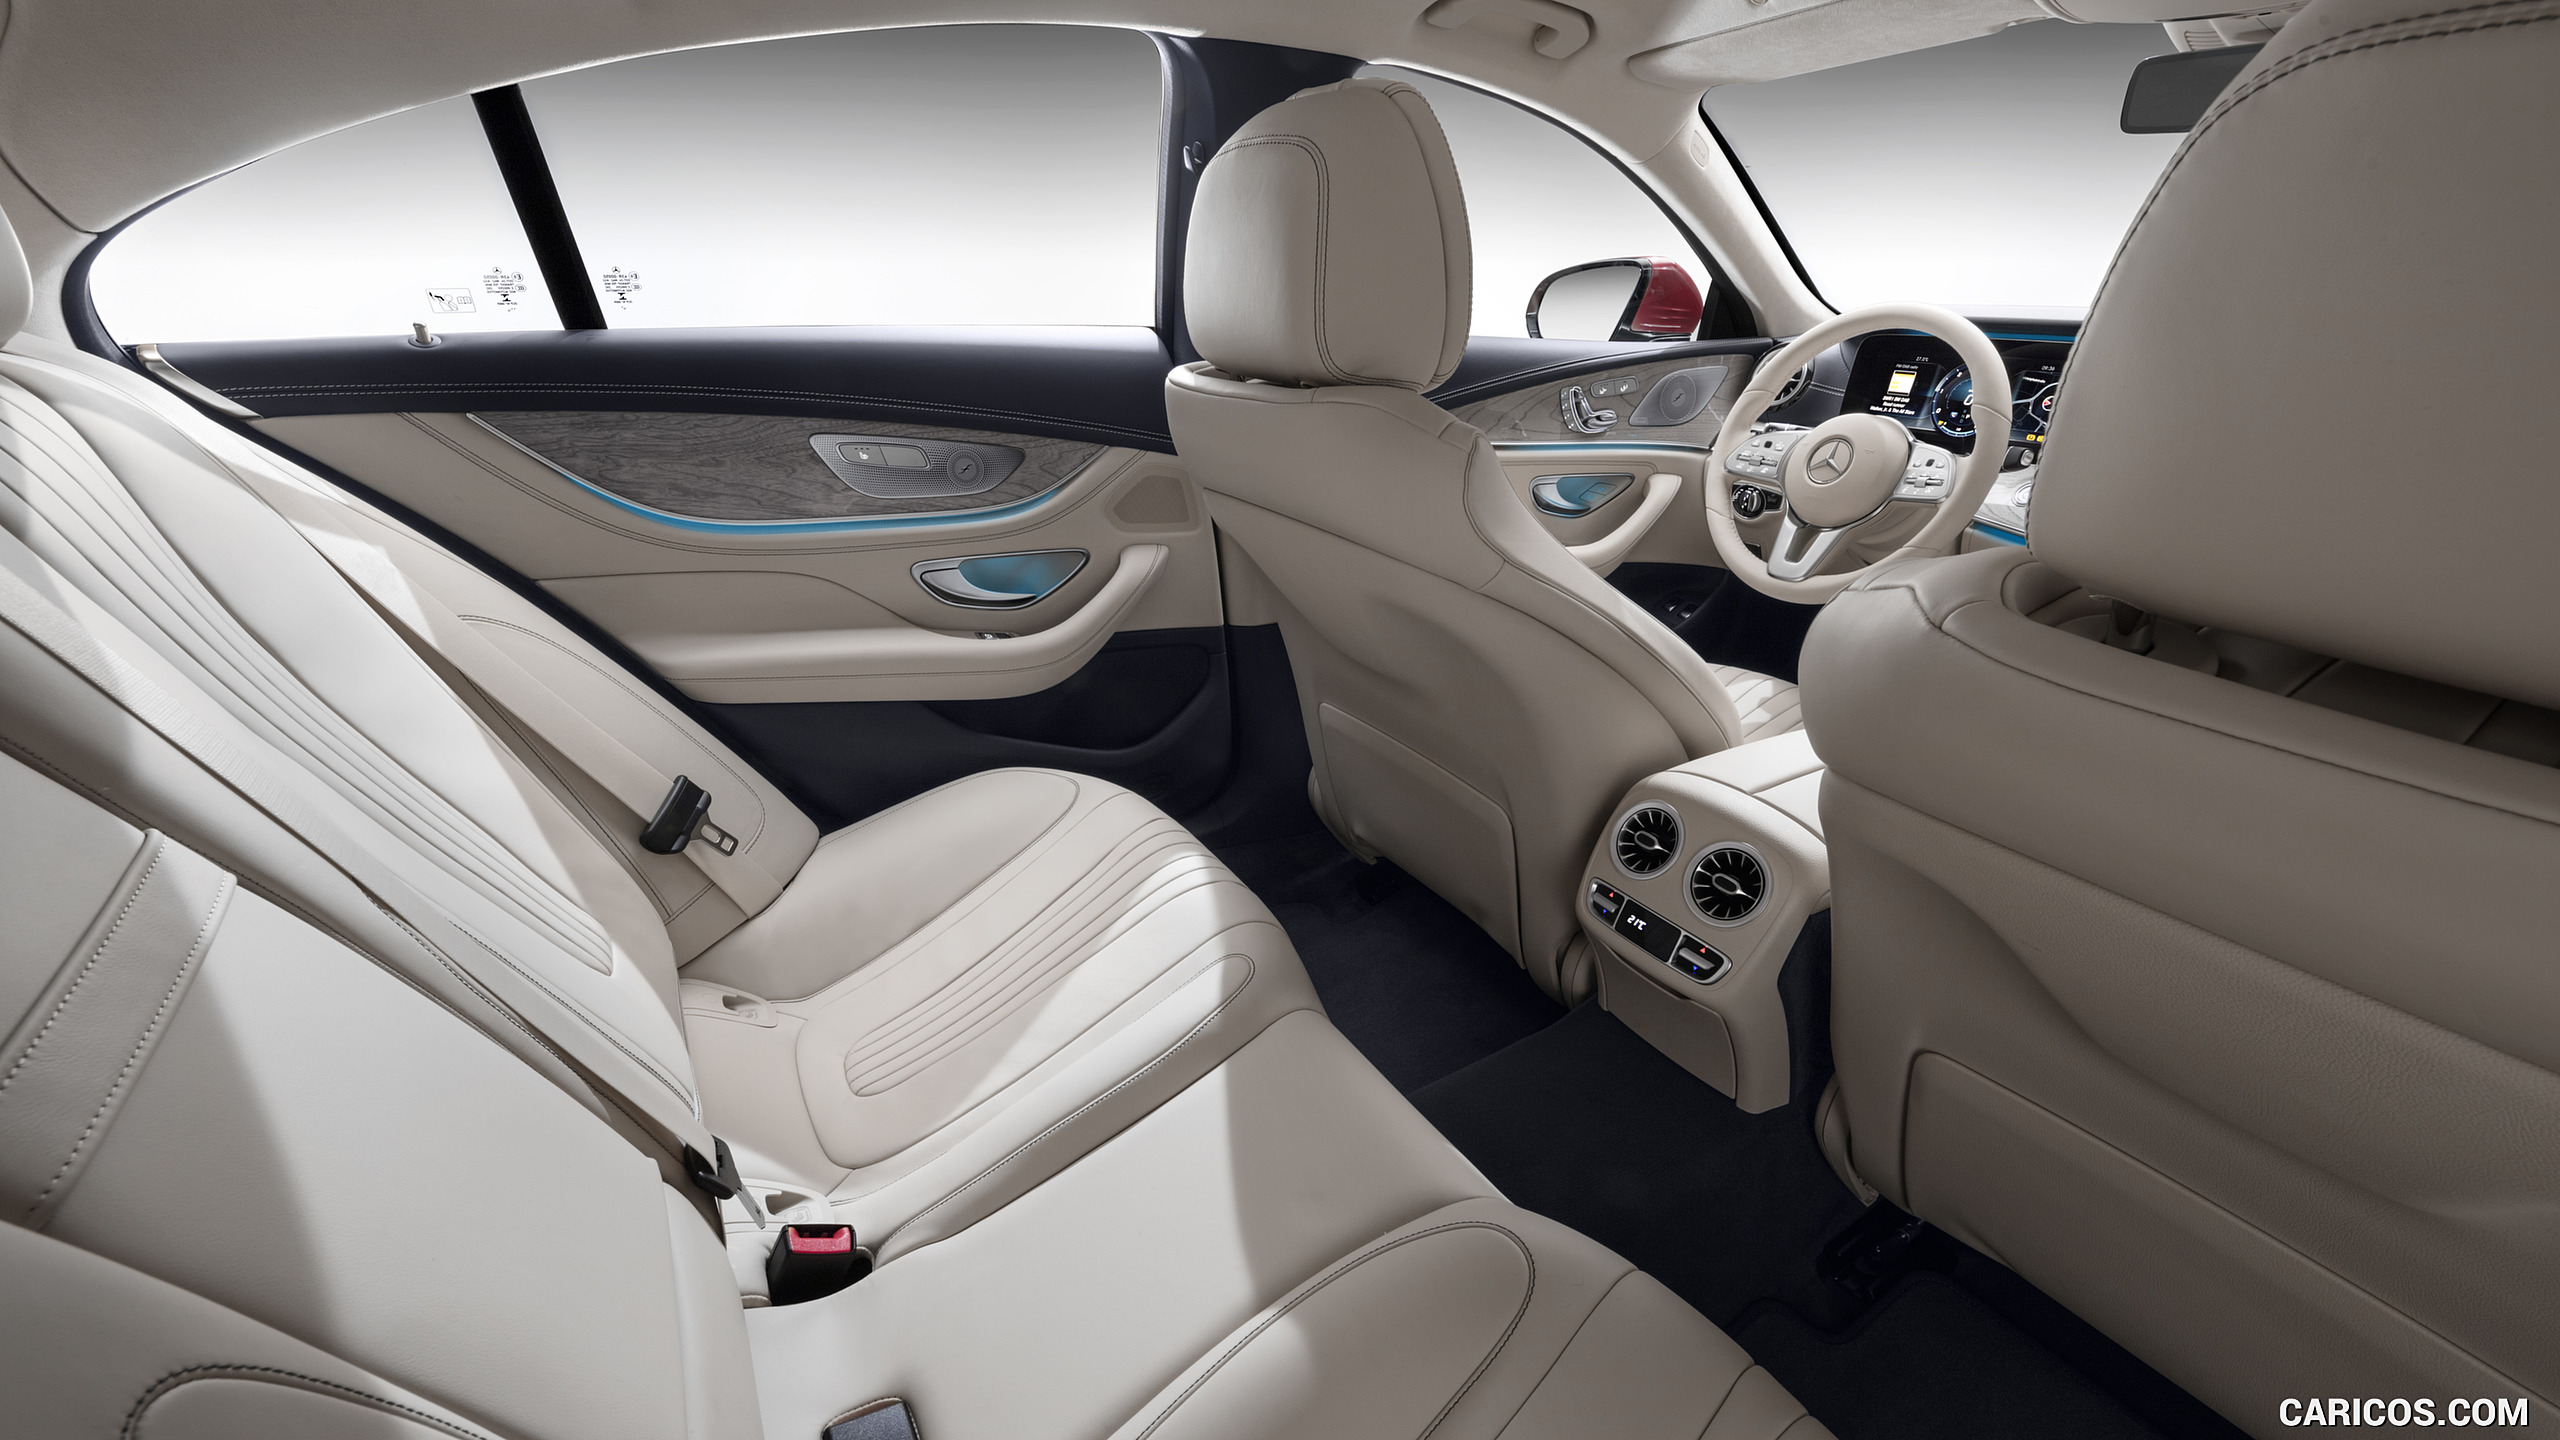 2019 Mercedes-Benz CLS - Interior, Rear Seats, #39 of 231